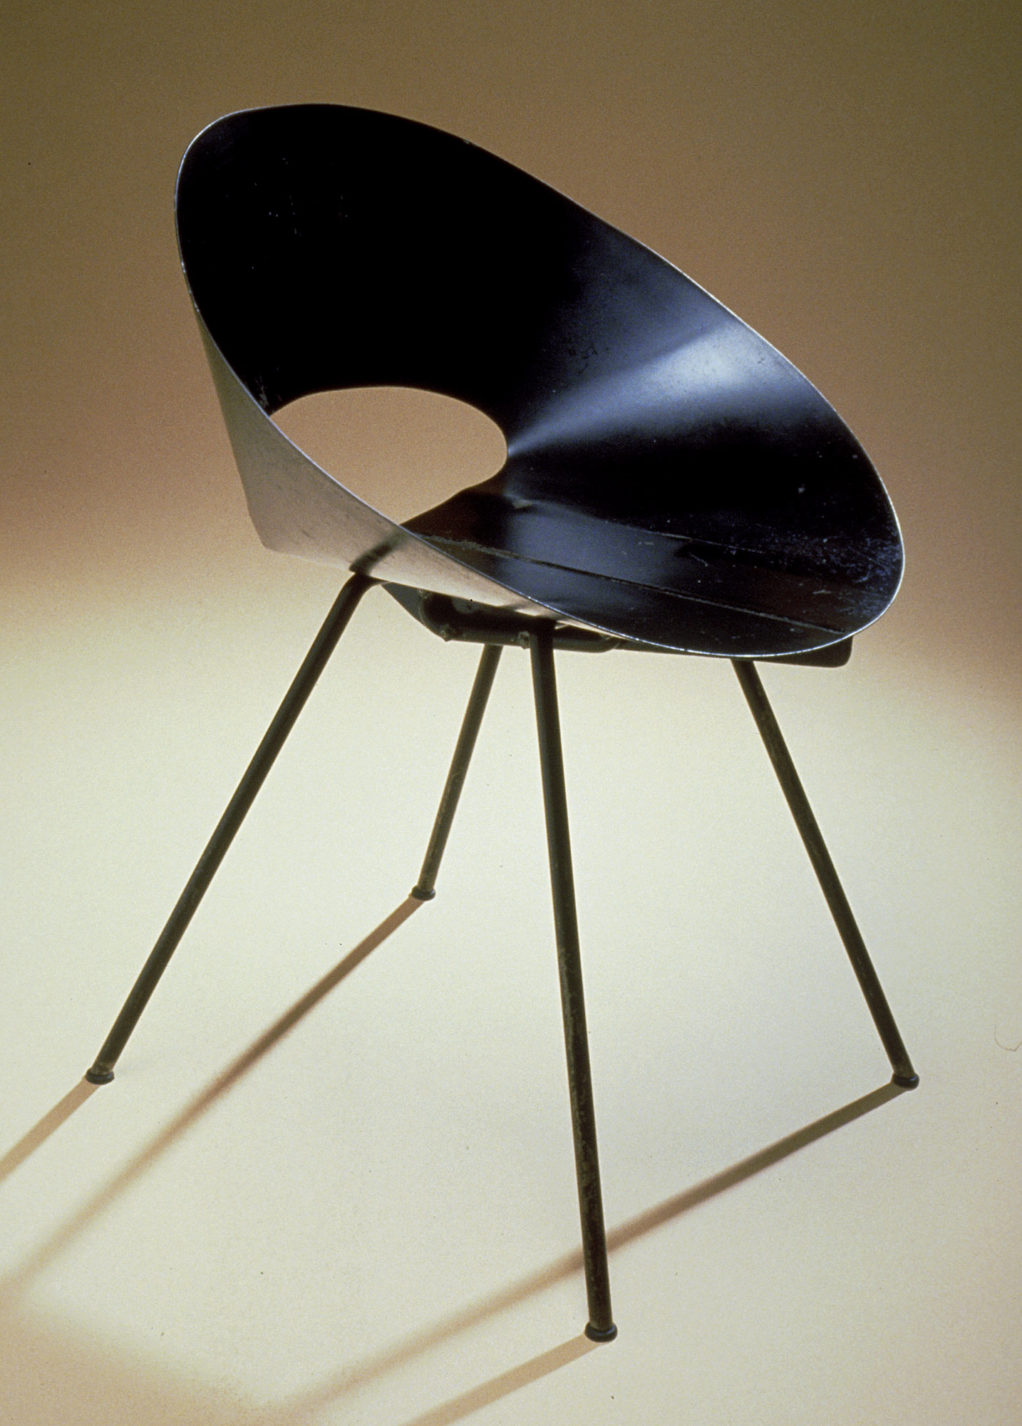 Chaise avec assise et dossier en tôle d’acier noir de forme conique et aux quatre pattes inclinées.